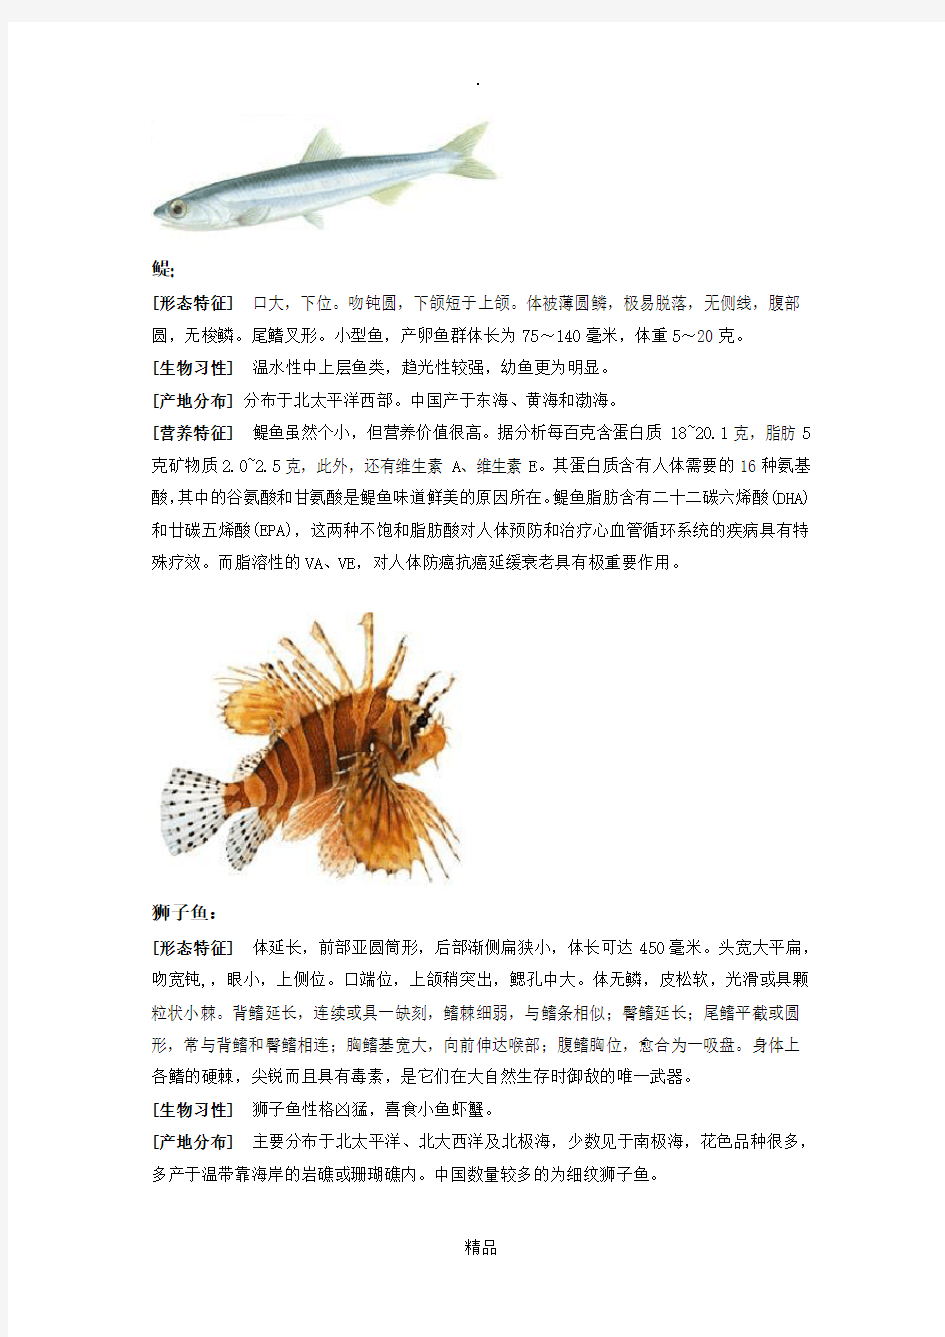 各种海鲜鱼类的介绍。